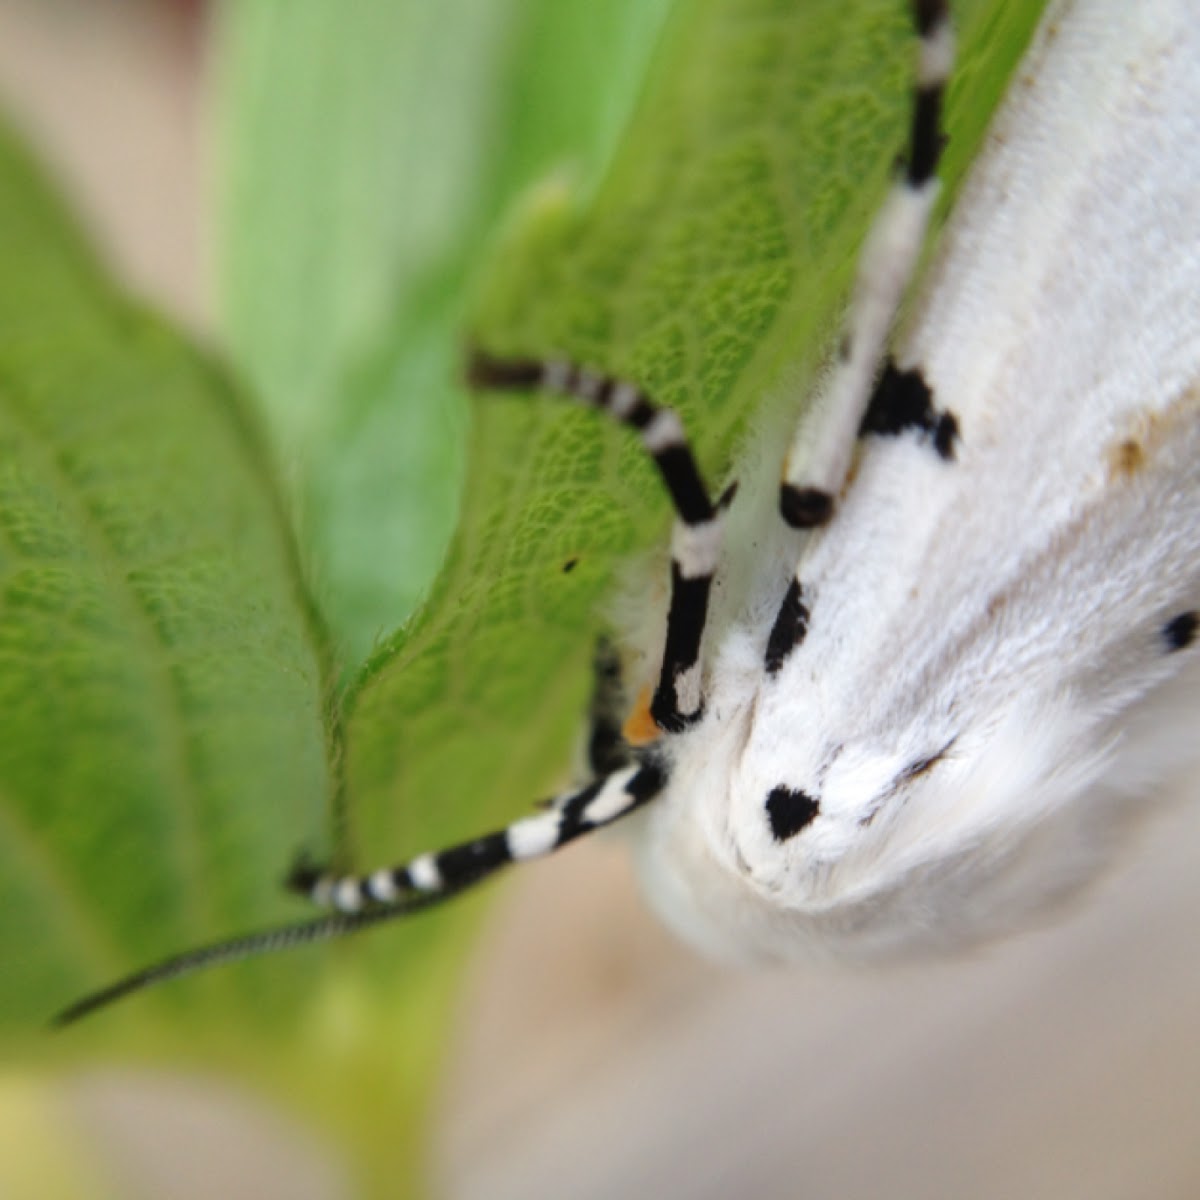 Vestal tiger moth